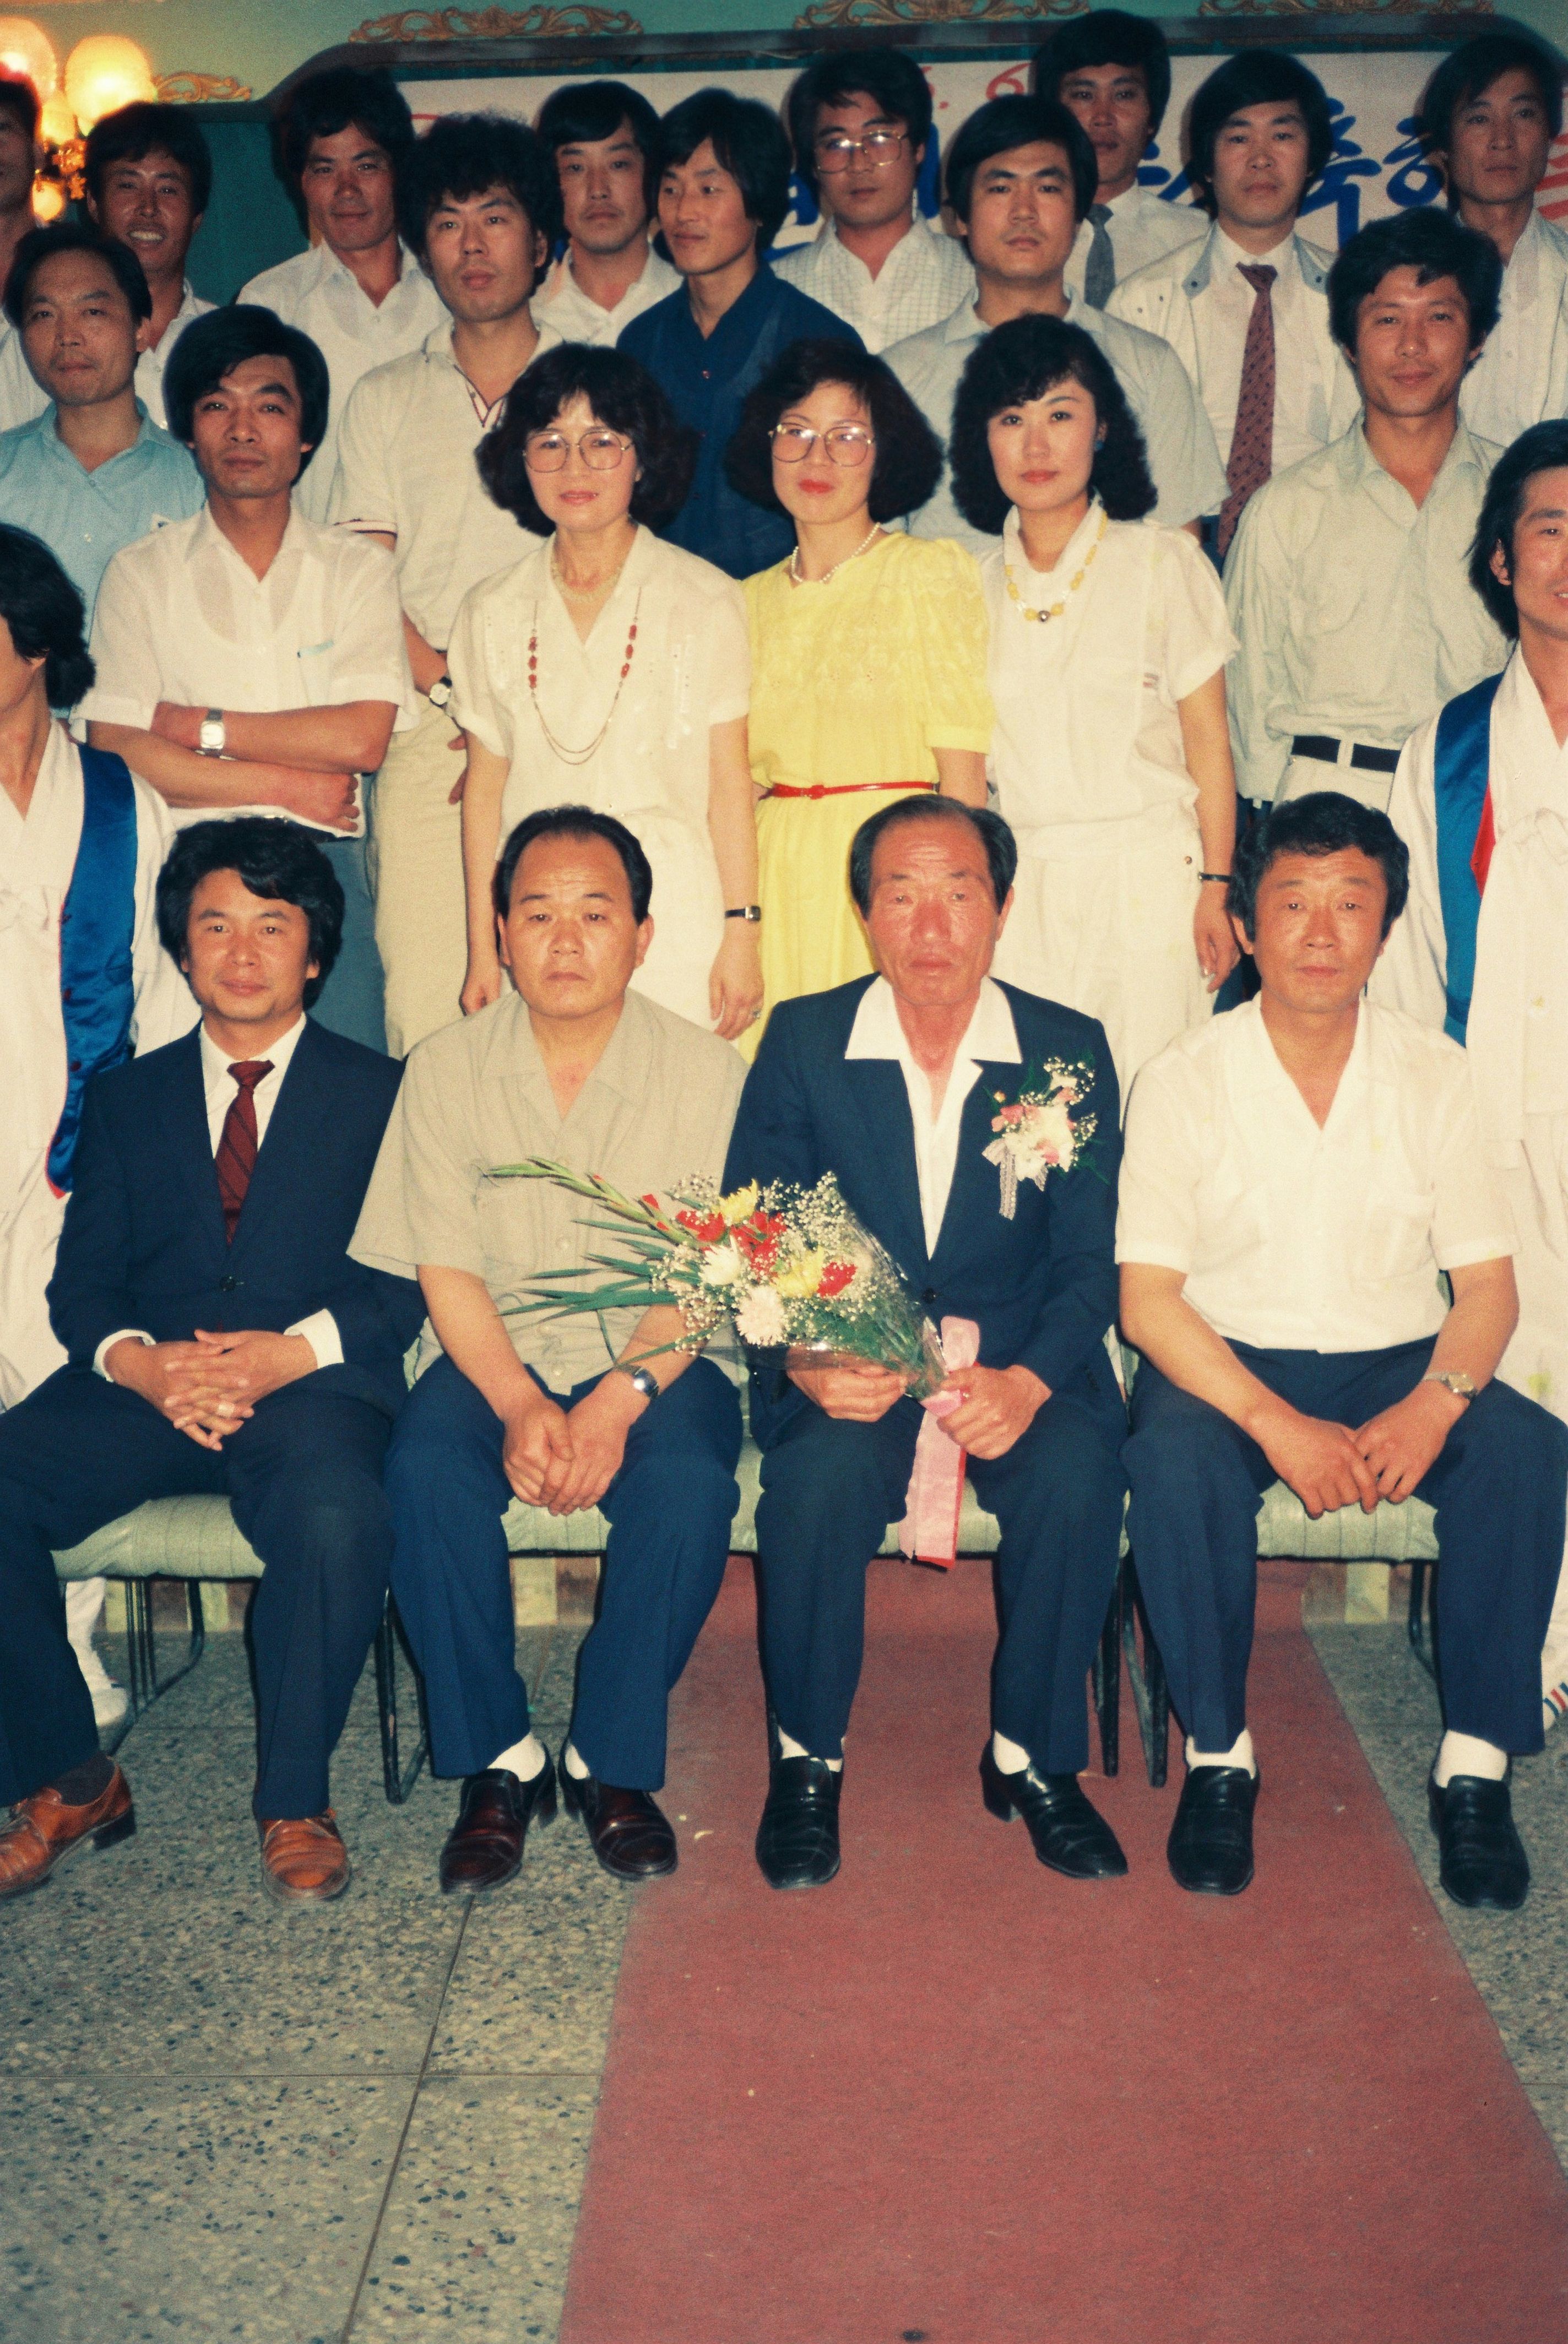 사진자료(1980년대)/1986/김상현선생수상축하 0/